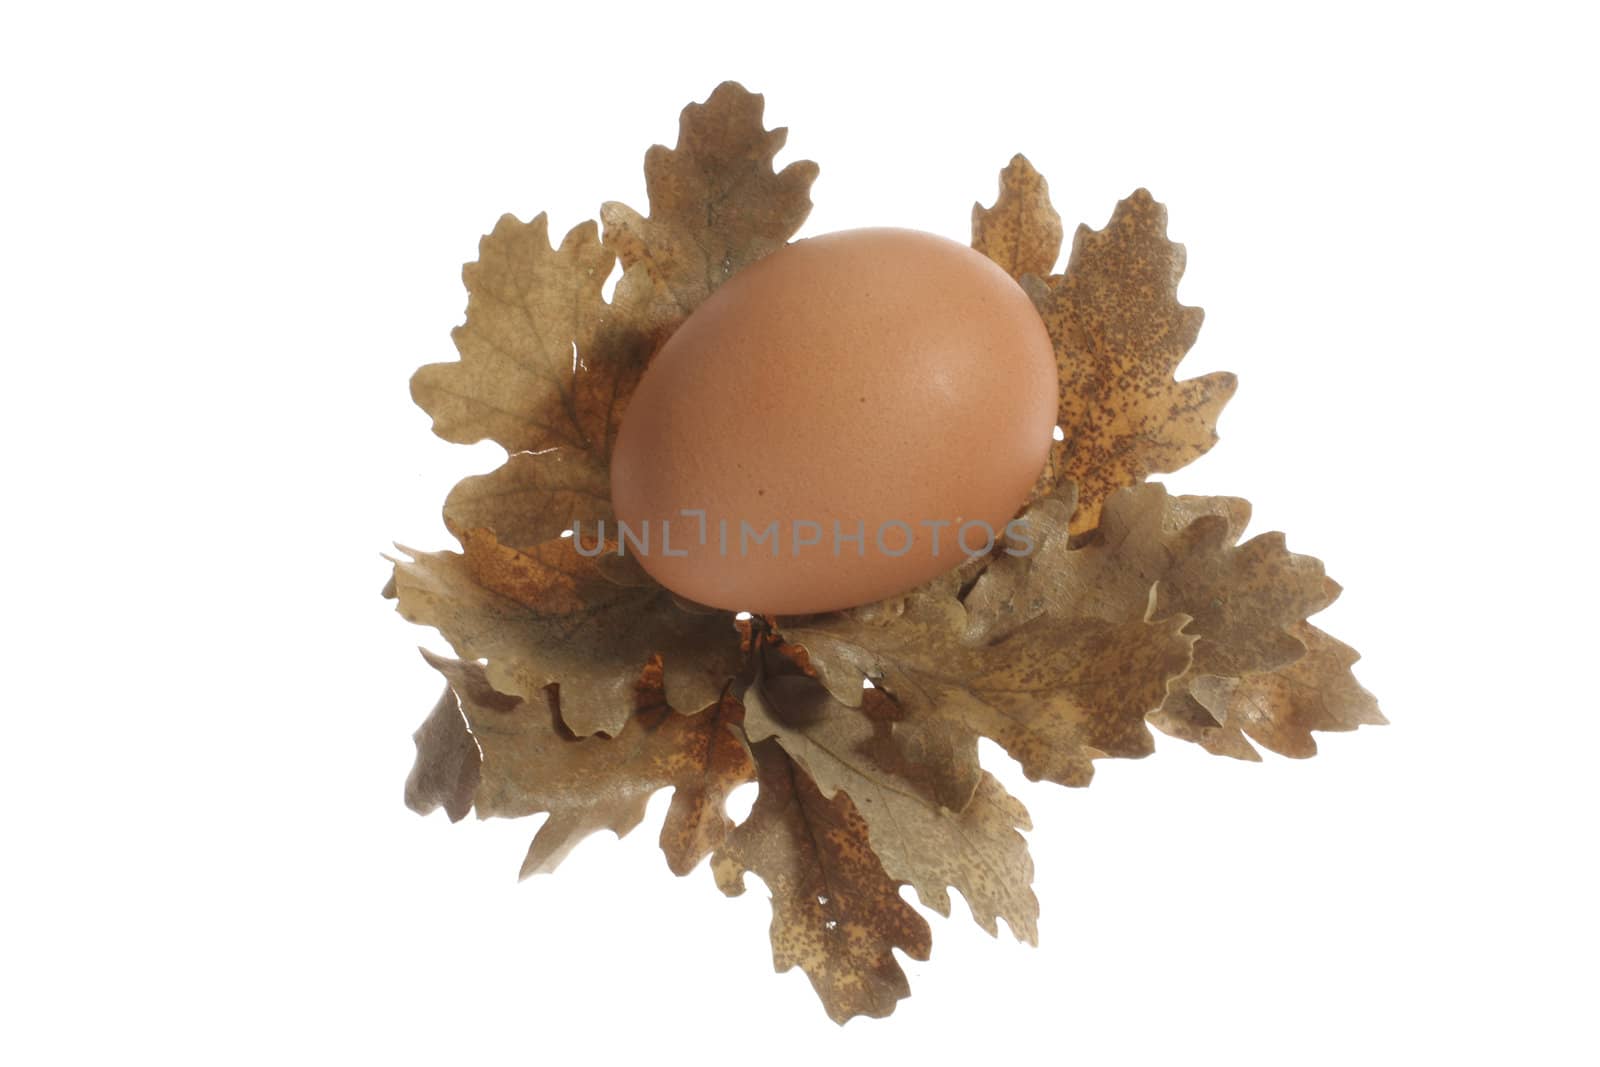 an egg on oak leaves by Jova